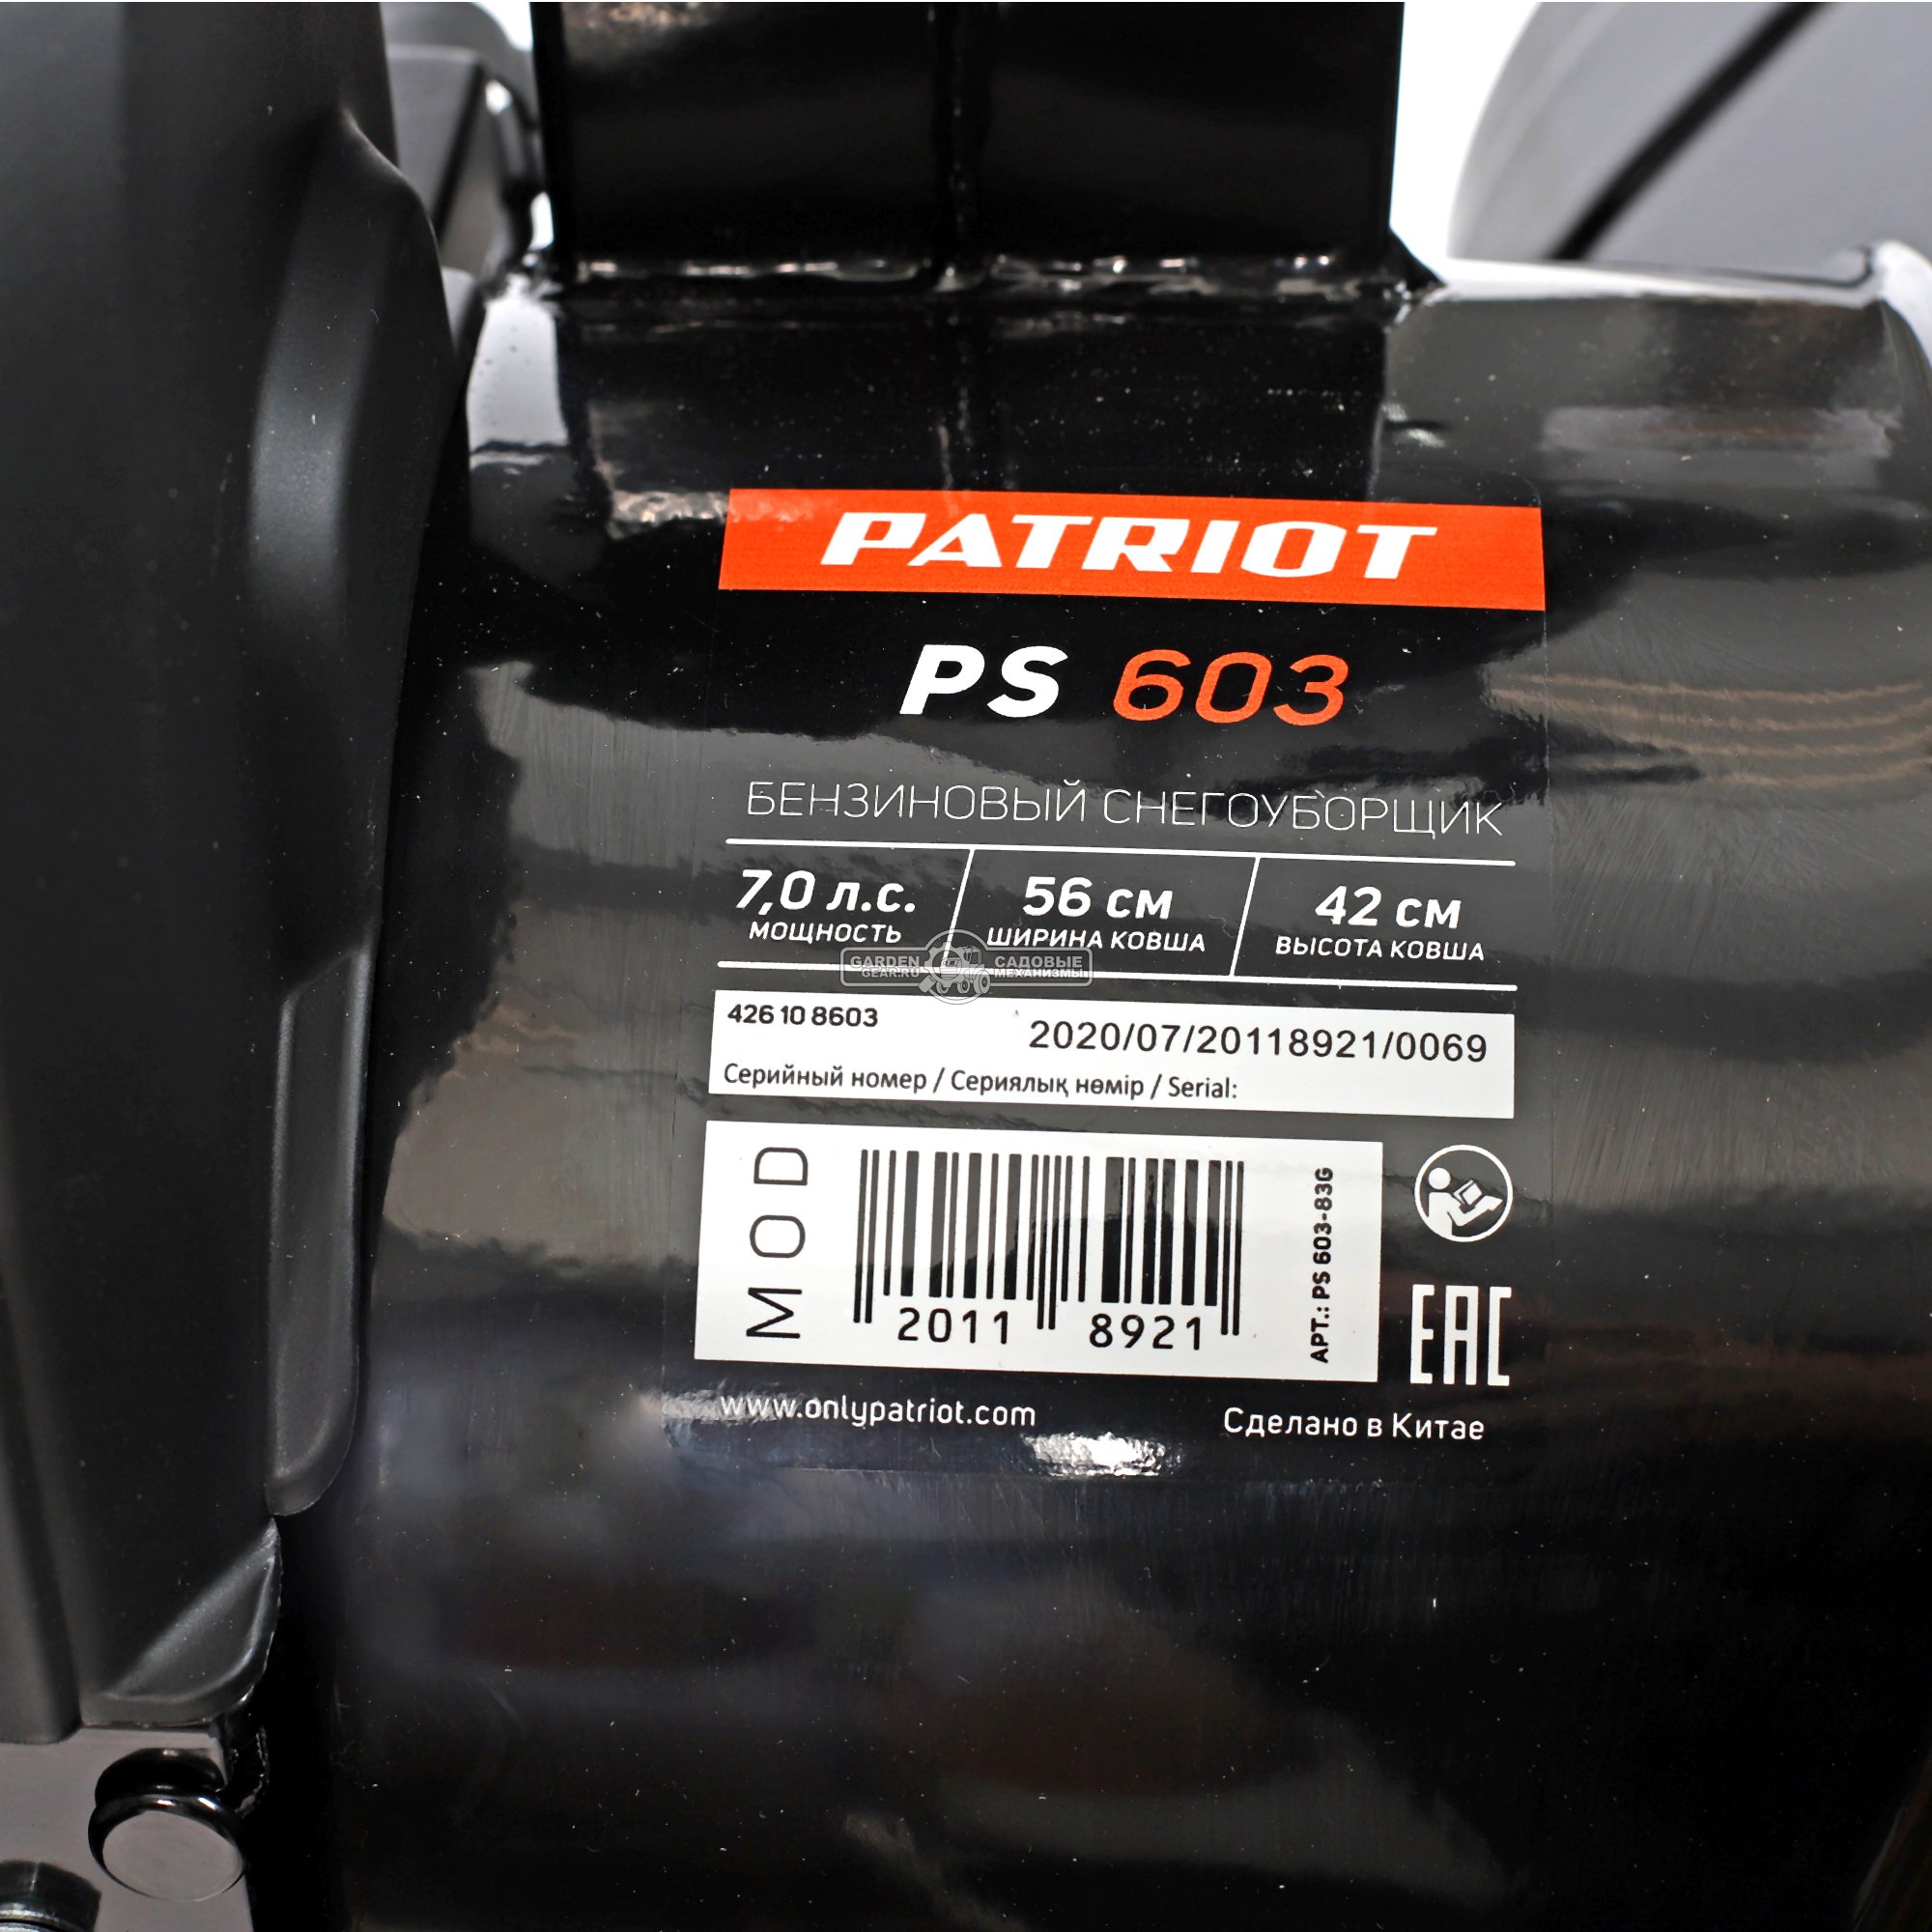 Снегоуборщик Patriot PS 603 (PRC, XTS 56-66 см., 7.0 л.с., 212 см3, скорости 6/2, 64 кг)